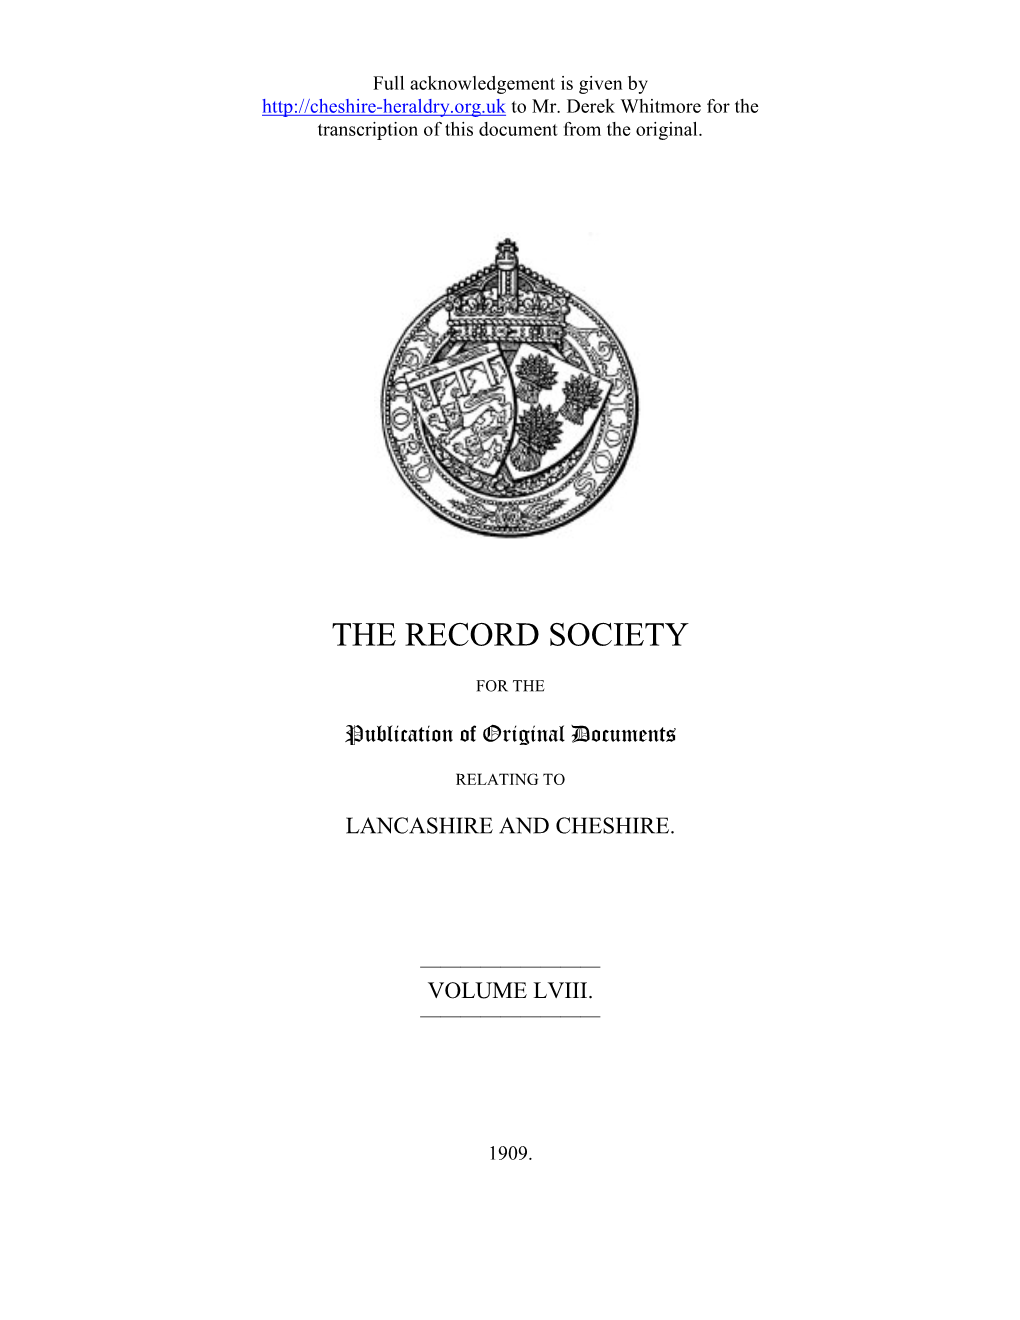 The Record Society